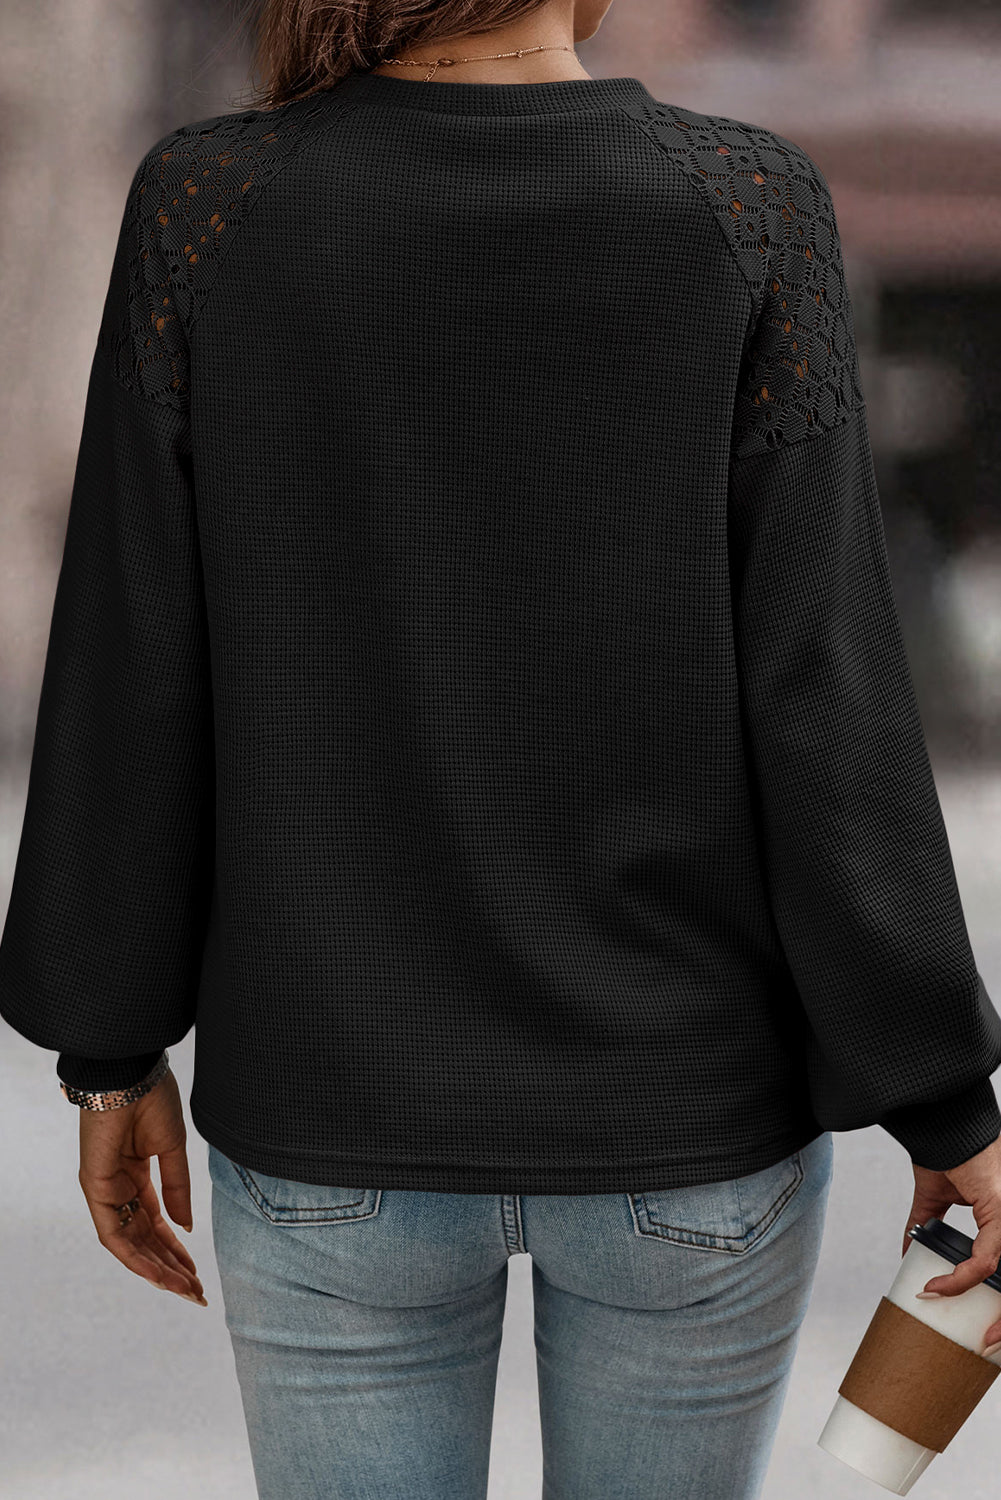 Crni čipkasti pulover dugih rukava s teksturom